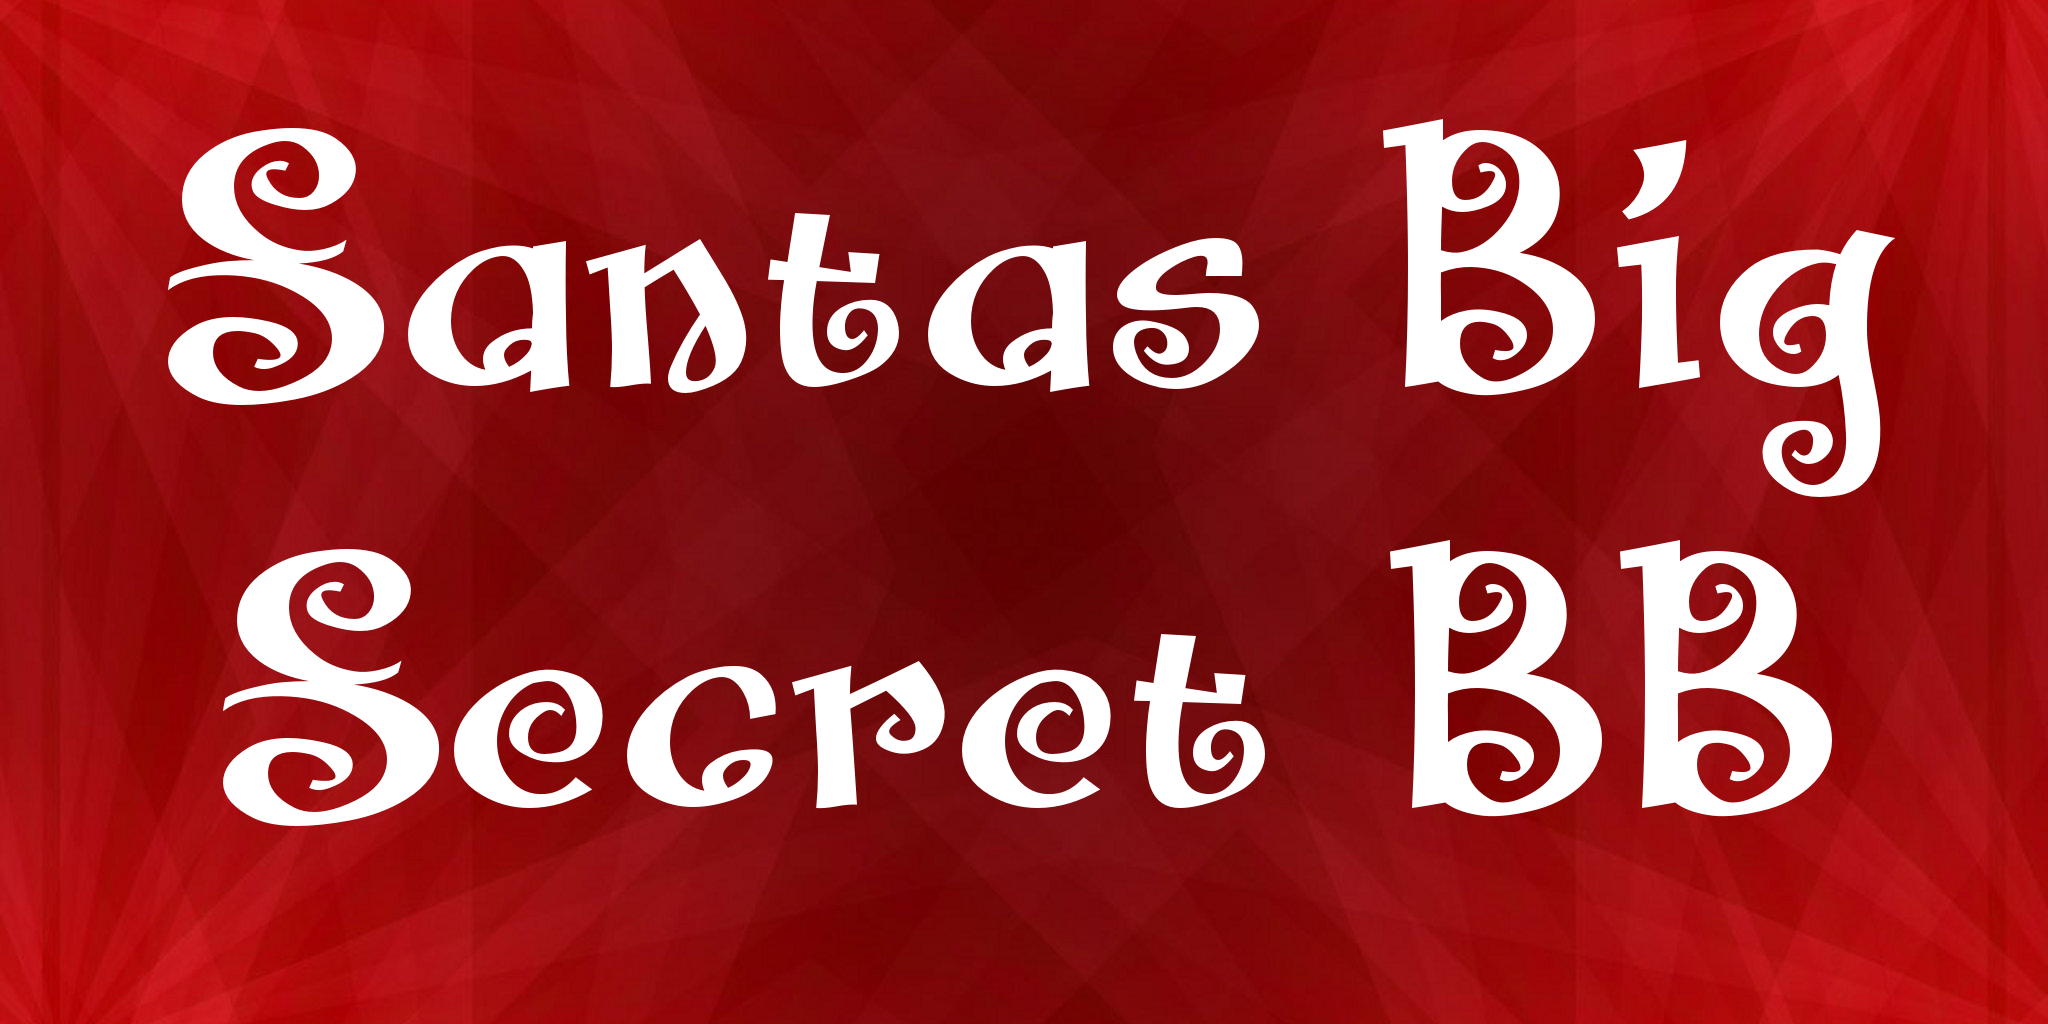 Santas Big Secret Bb